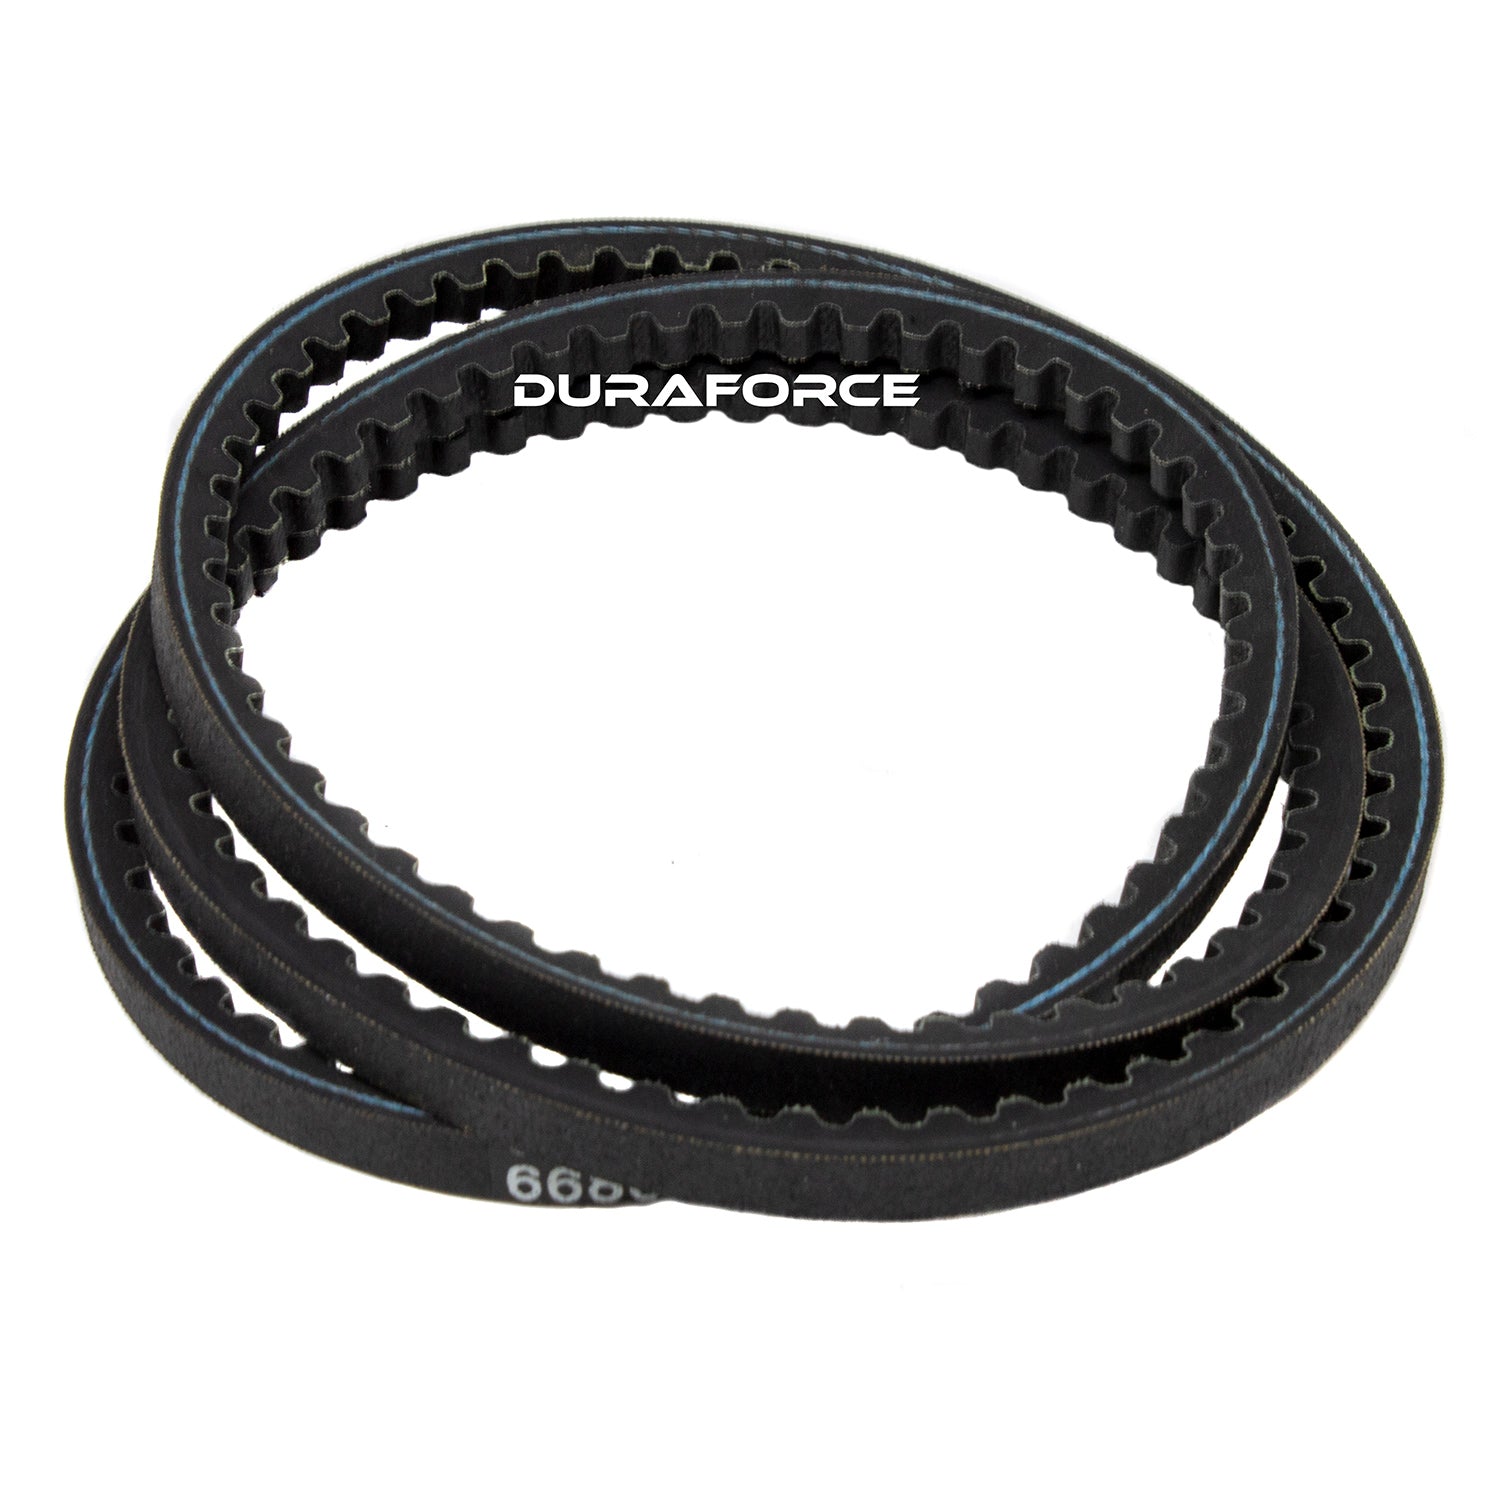 Duraforce 7100104, Alternator Belt For Bobcat